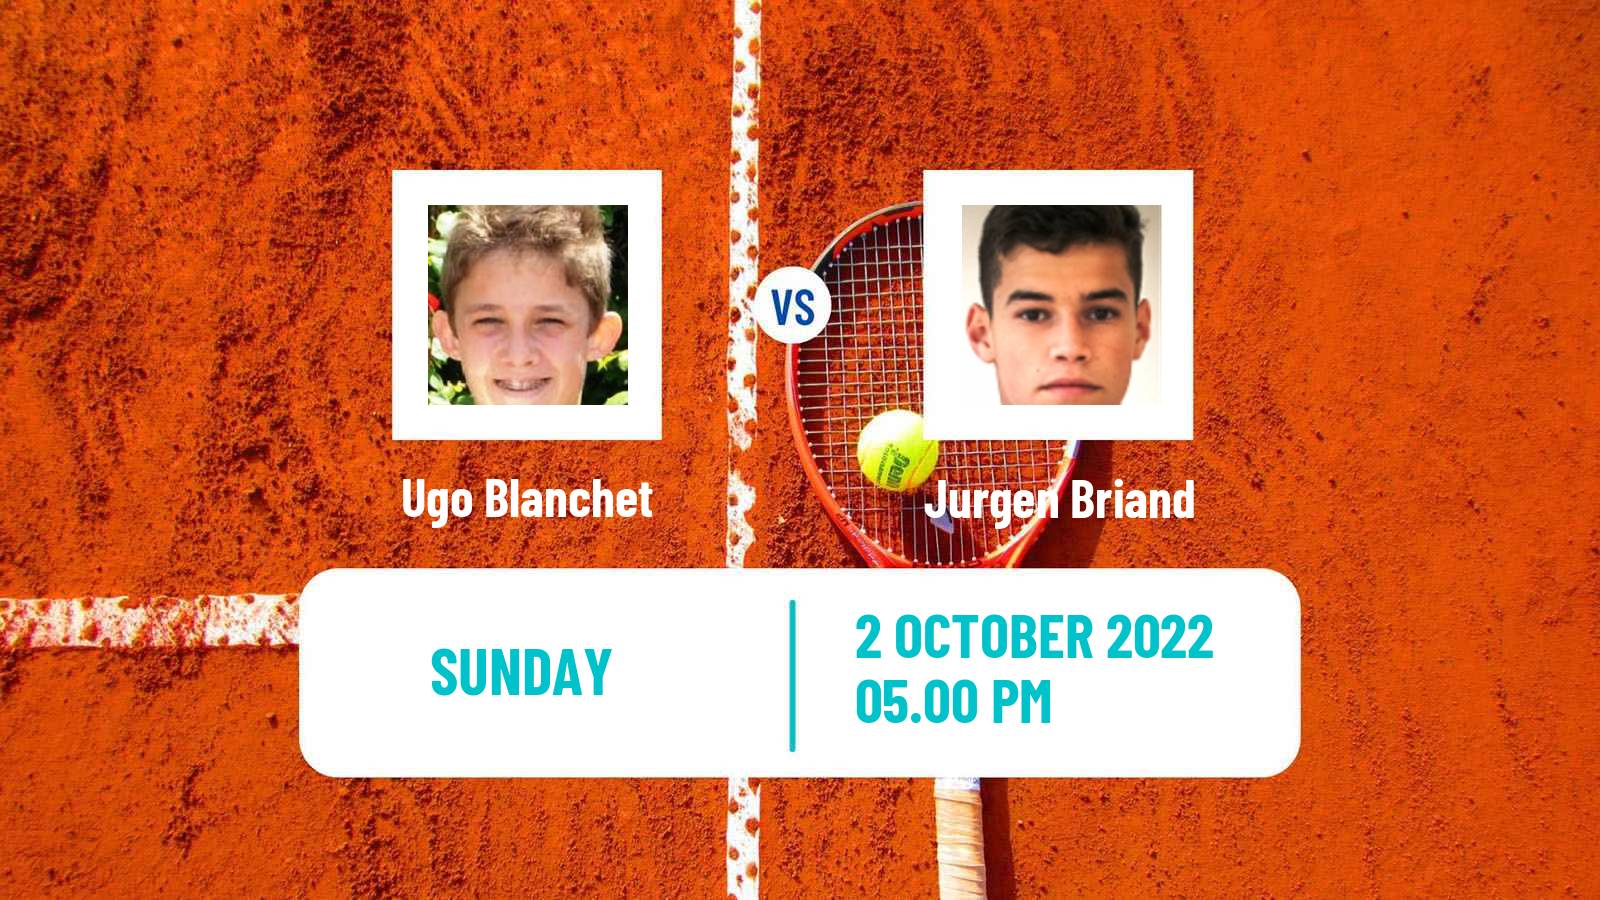 Tennis ATP Challenger Ugo Blanchet - Jurgen Briand